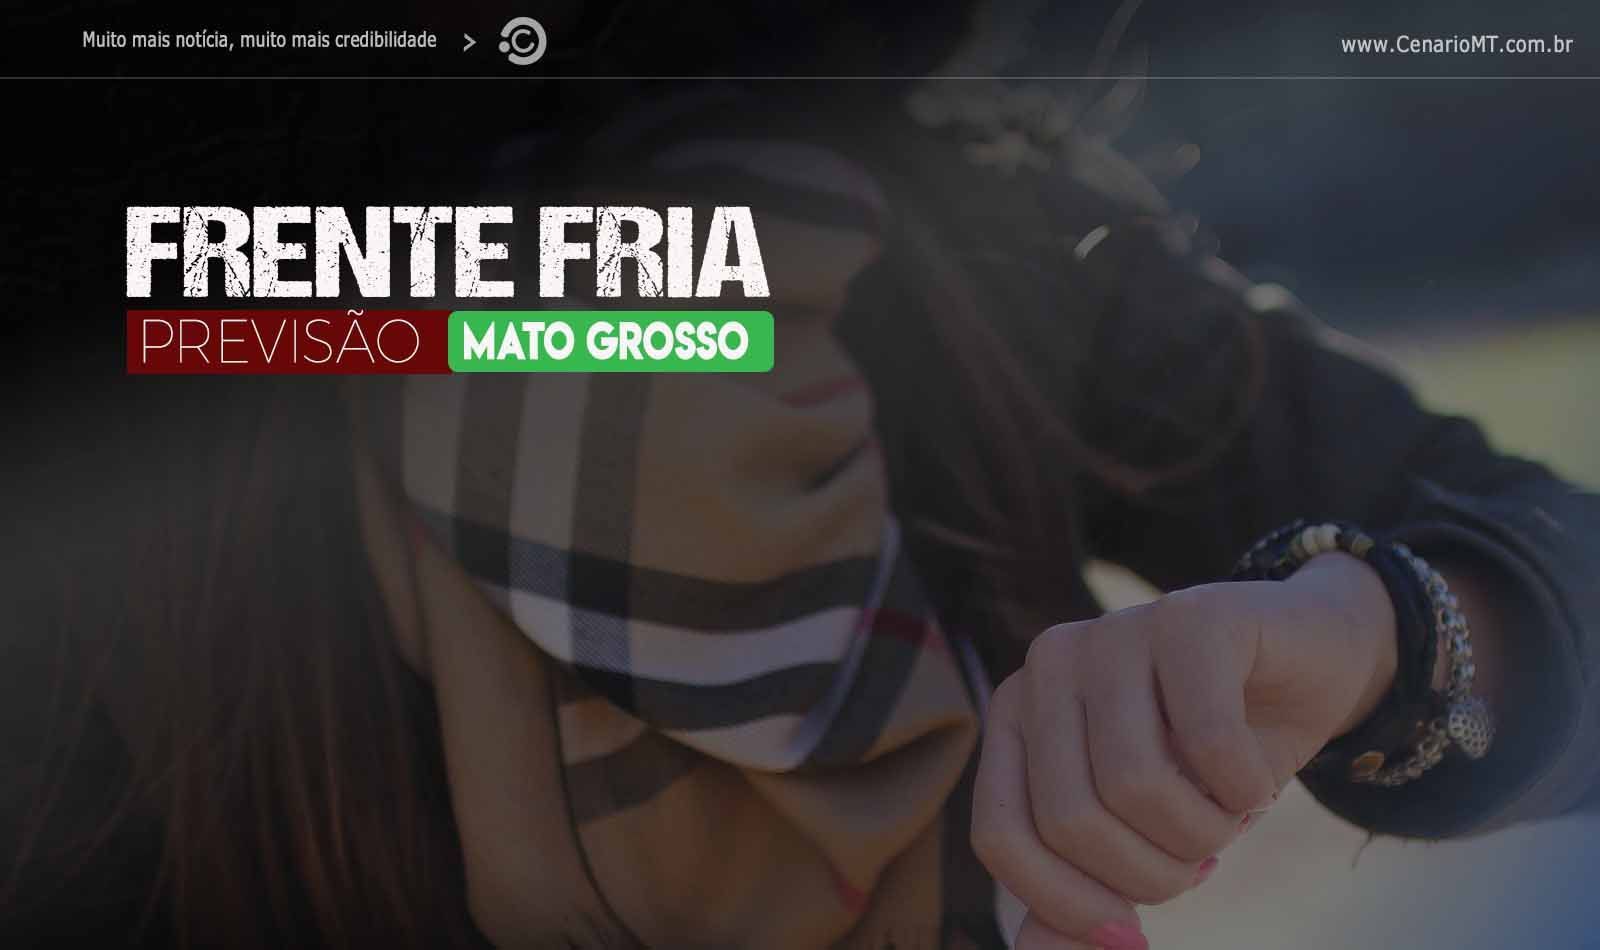 FRENTE FRIA - PREVISAO EM MATO GROSSO